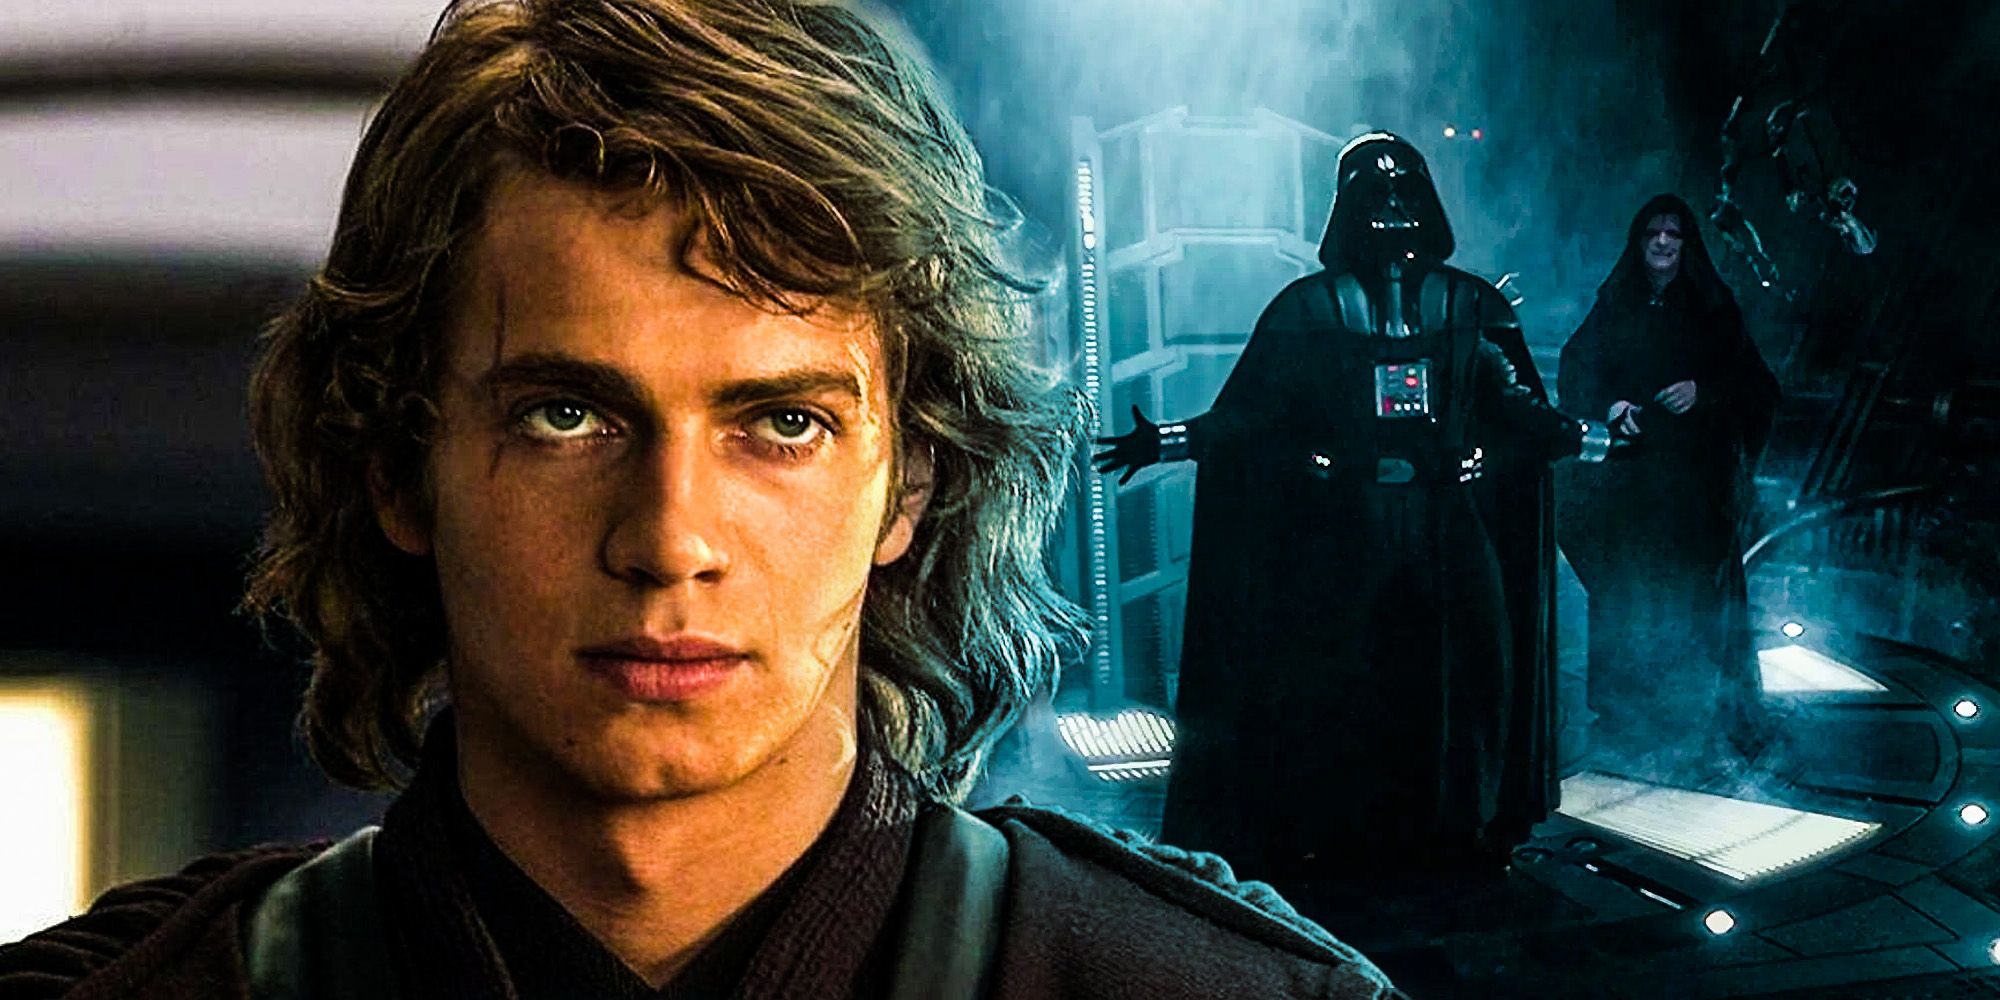 Los 10 mejores momentos de Star Wars de Hayden Christensen como Anakin Skywalker, clasificados